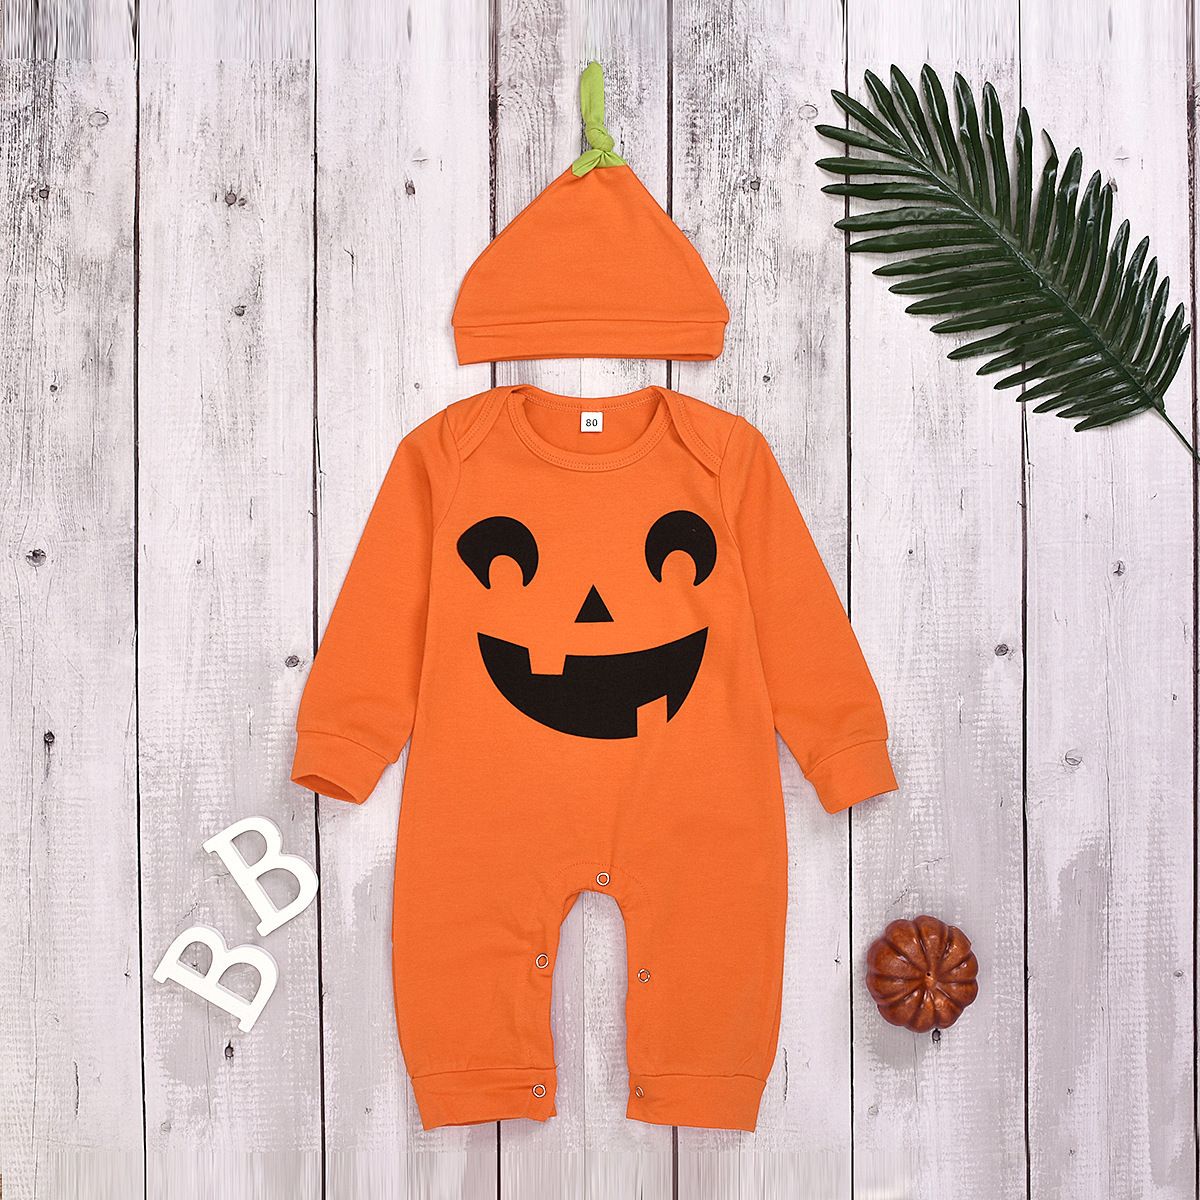 Discount Newborn Baby Boys Girls Clothes Halloween Pumpkin Striped Long ...